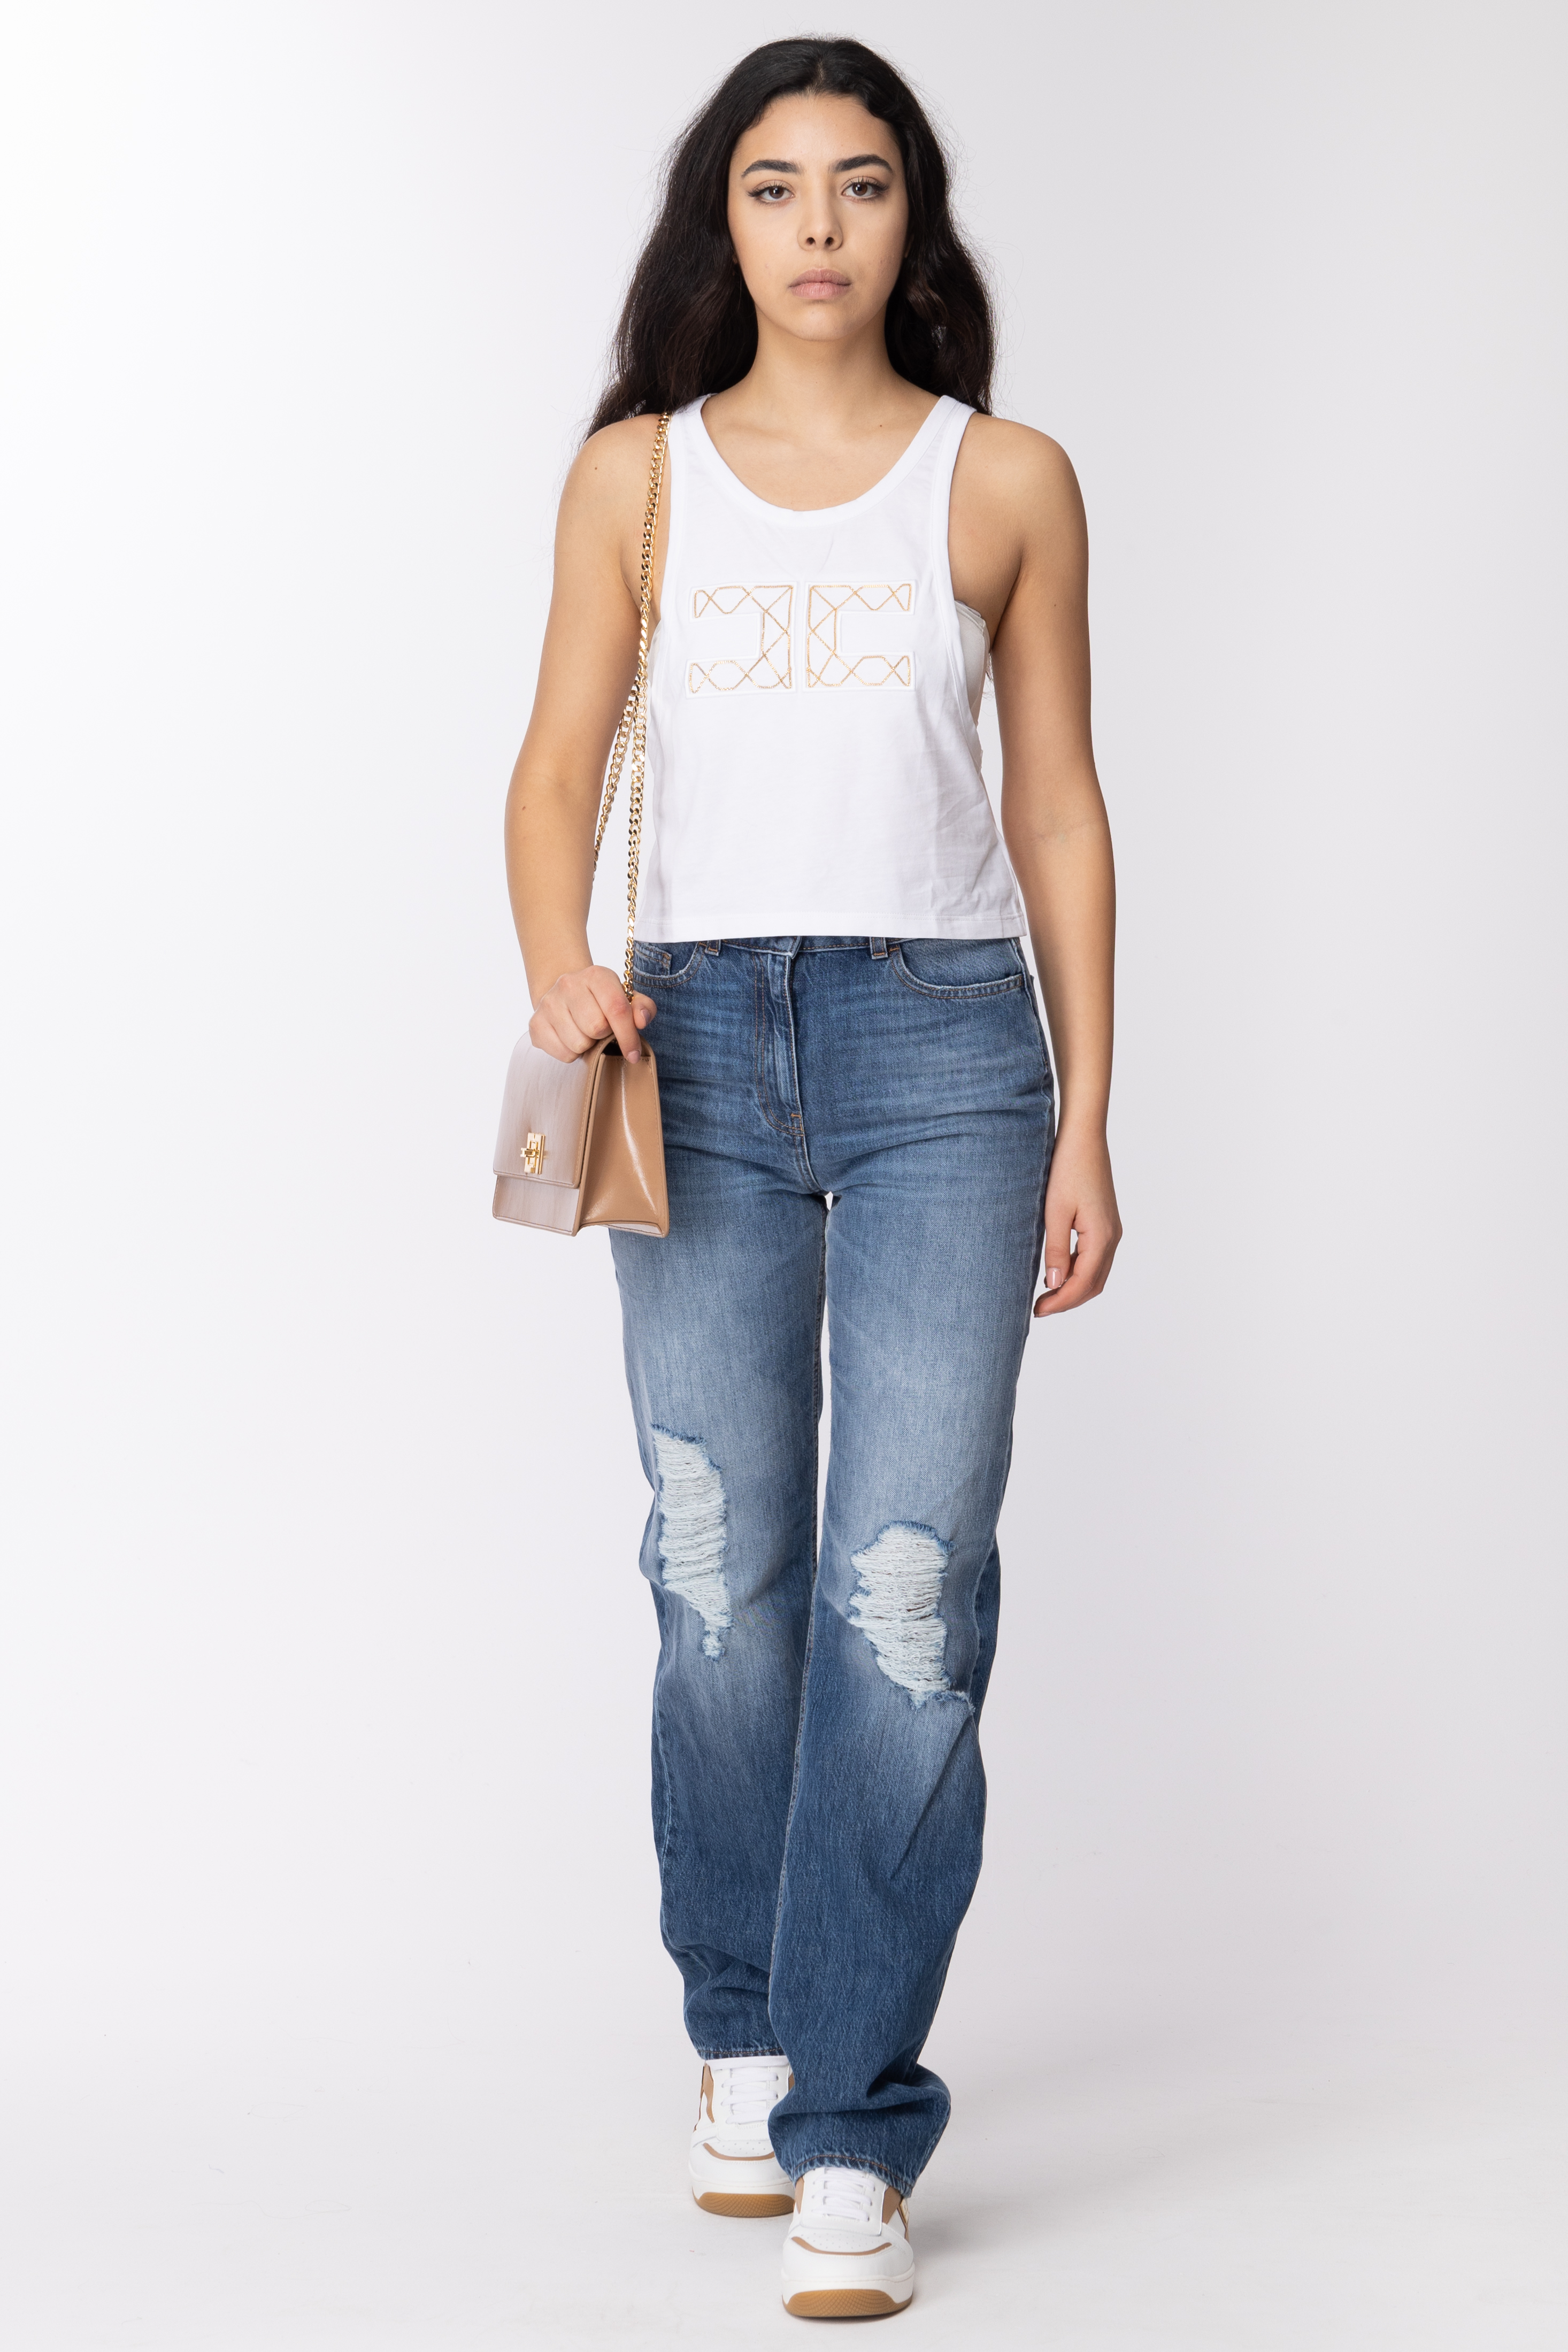 Vista previa: Elisabetta Franchi Camiseta sin mangas con logo bordado Gesso